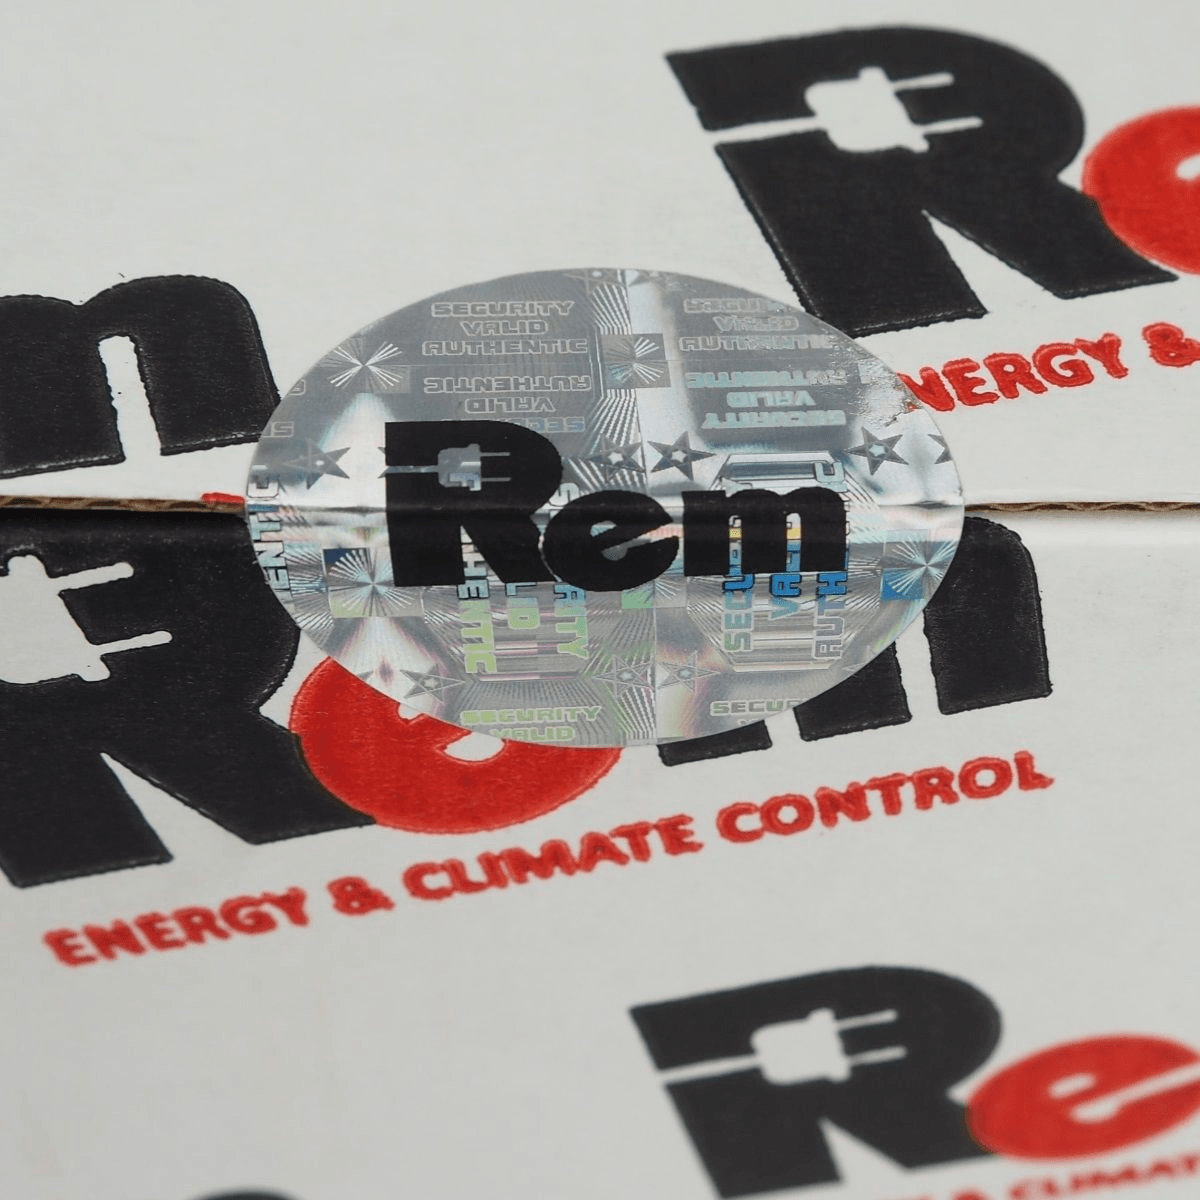 Блок розеток Rem-10 без шнура с инд., 4 Sсhuko, вход IEC 60320 C14, 10A, алюм., 10" от ЦМО